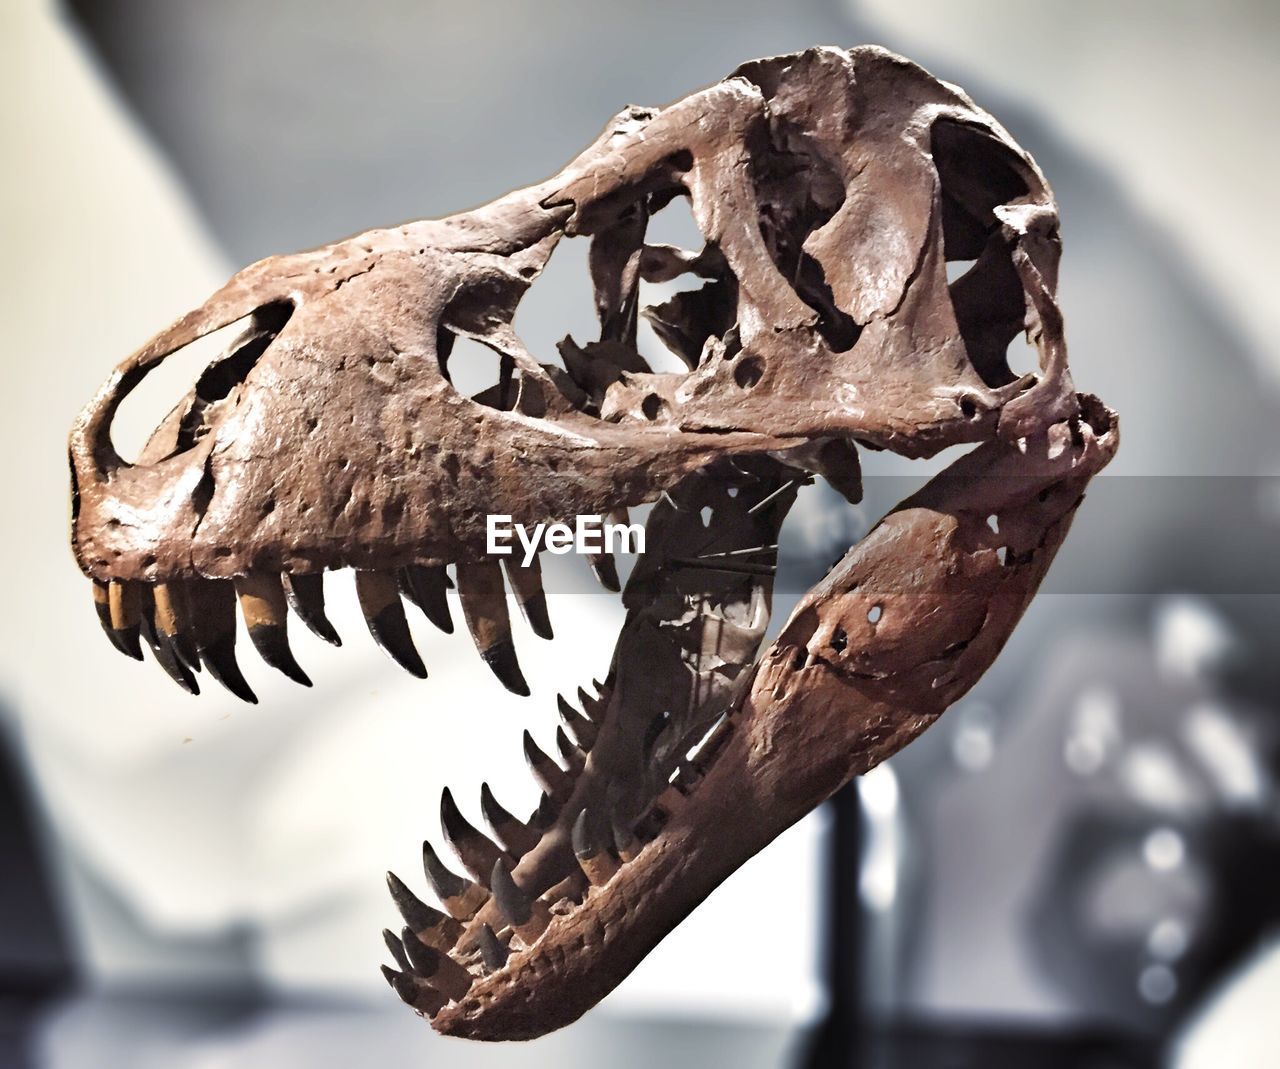 Dinosaur skull in museum